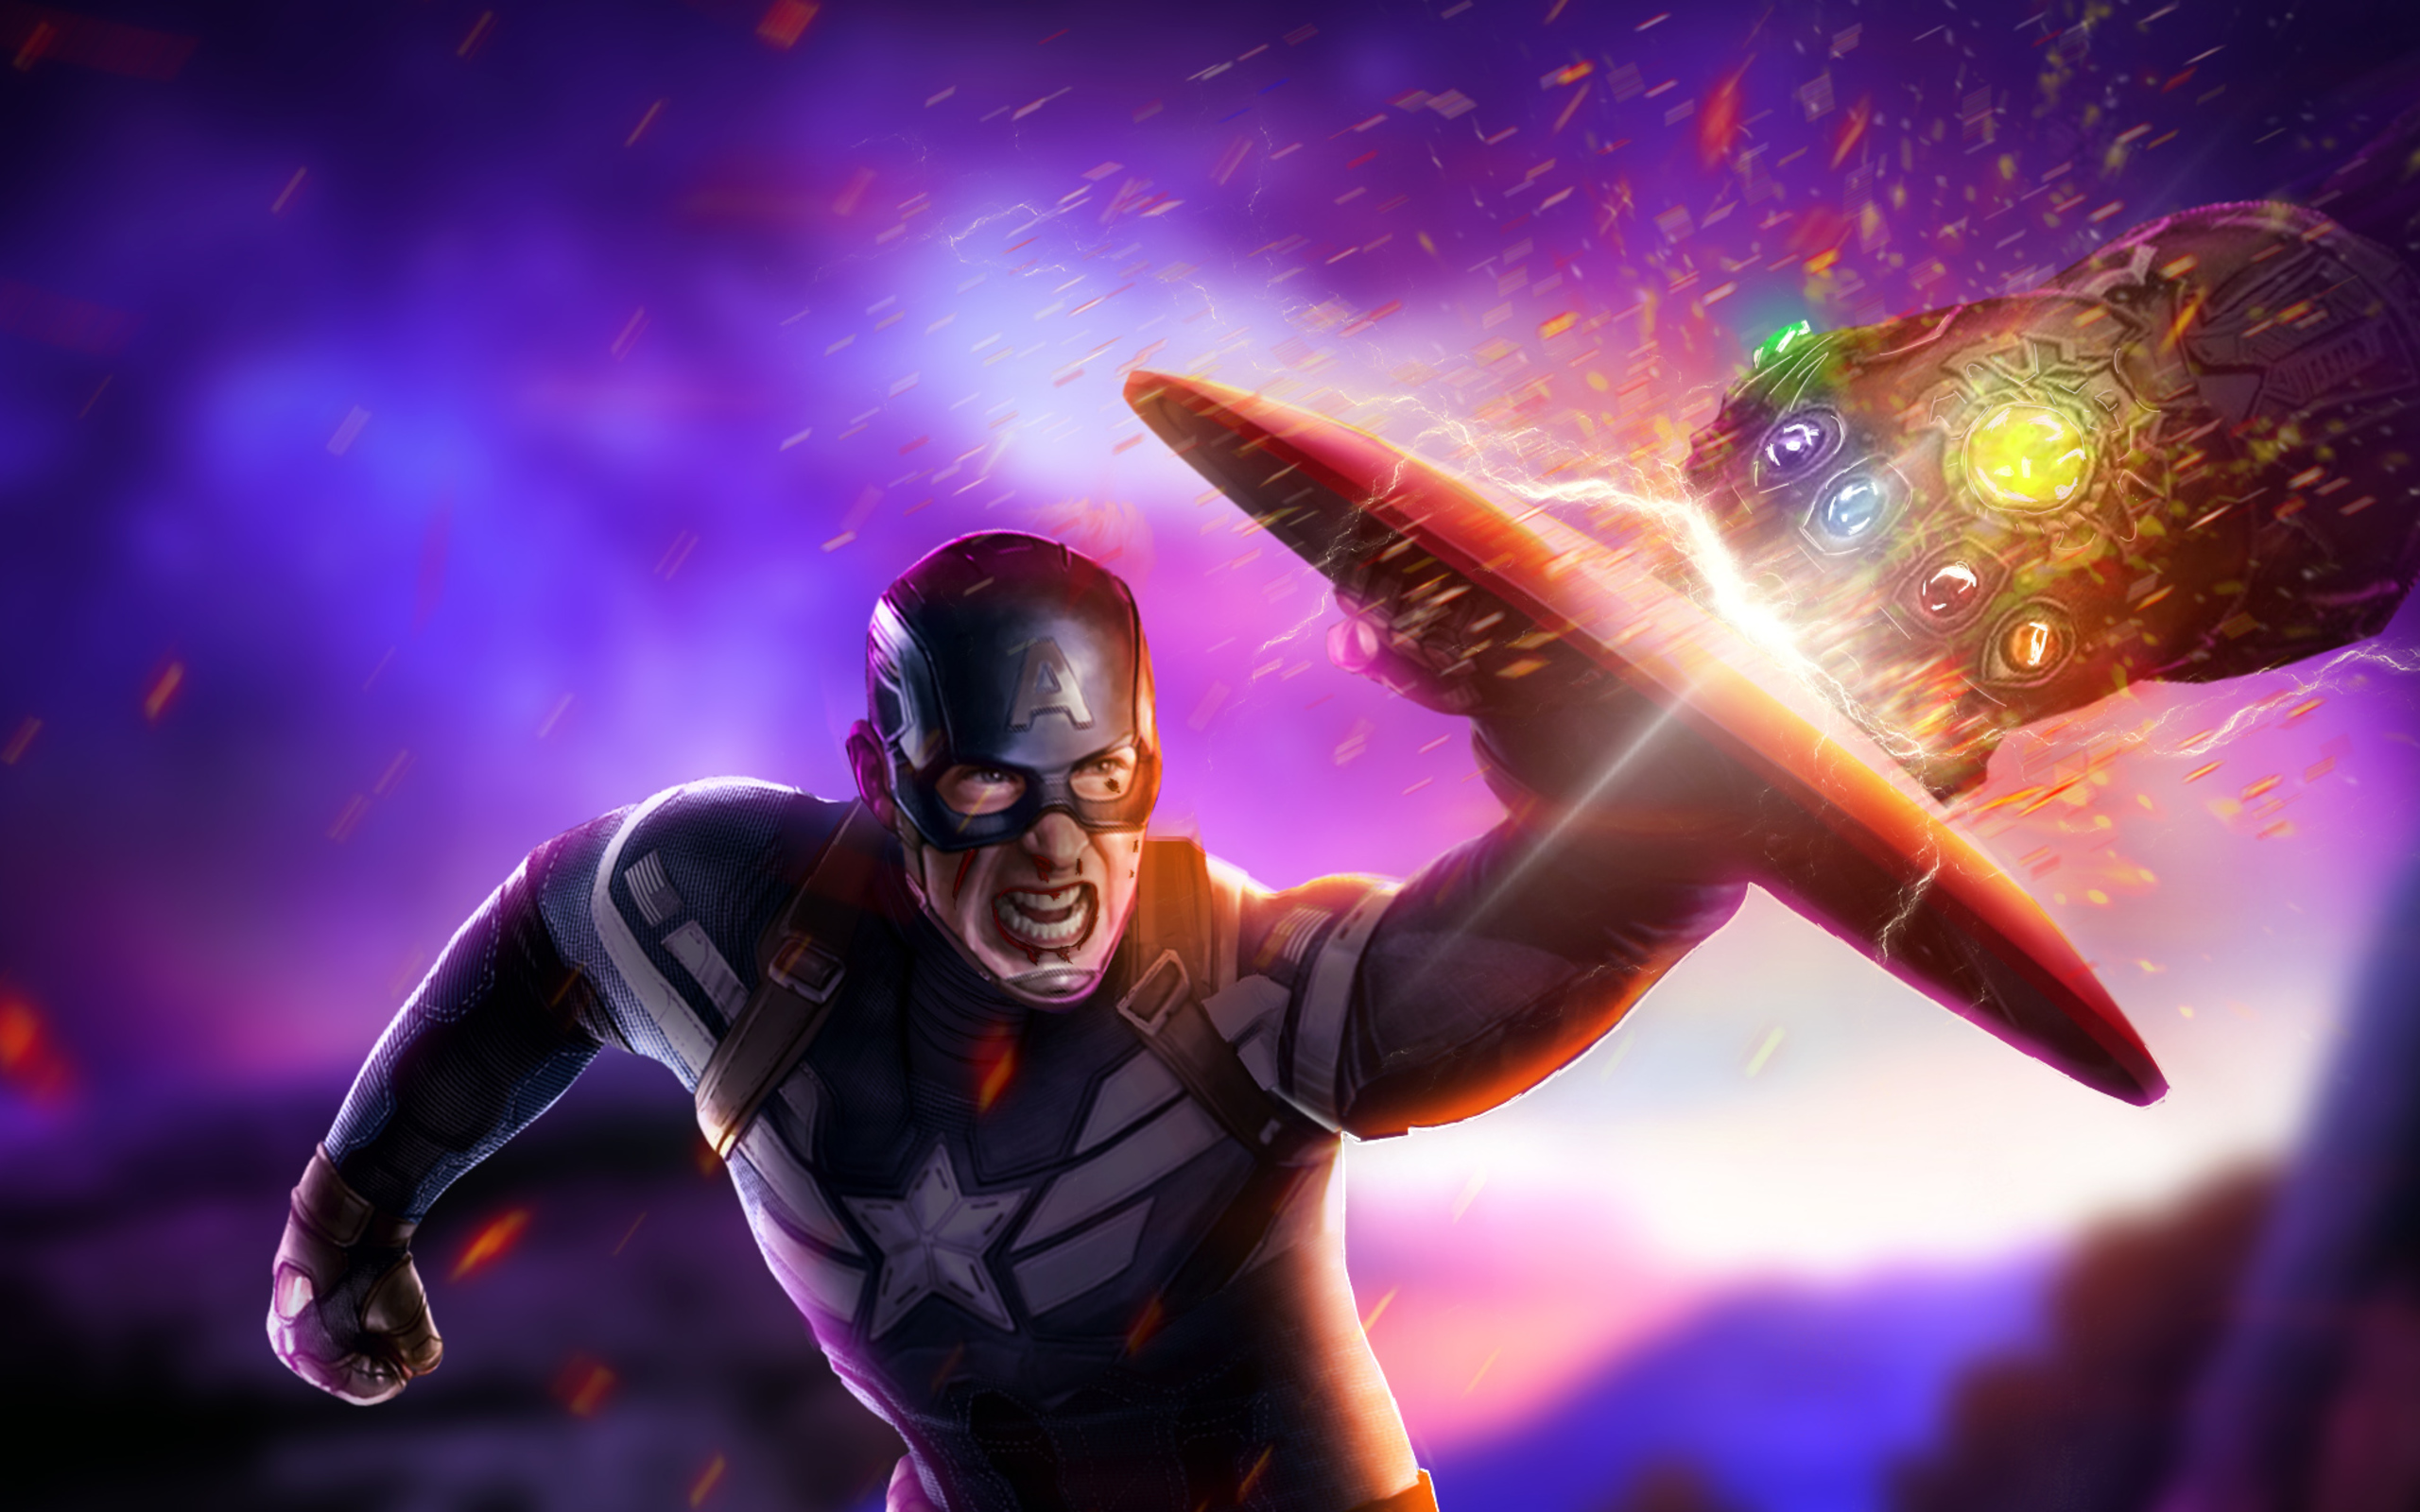 Captain America Vs Thanos Endgame , HD Wallpaper & Backgrounds